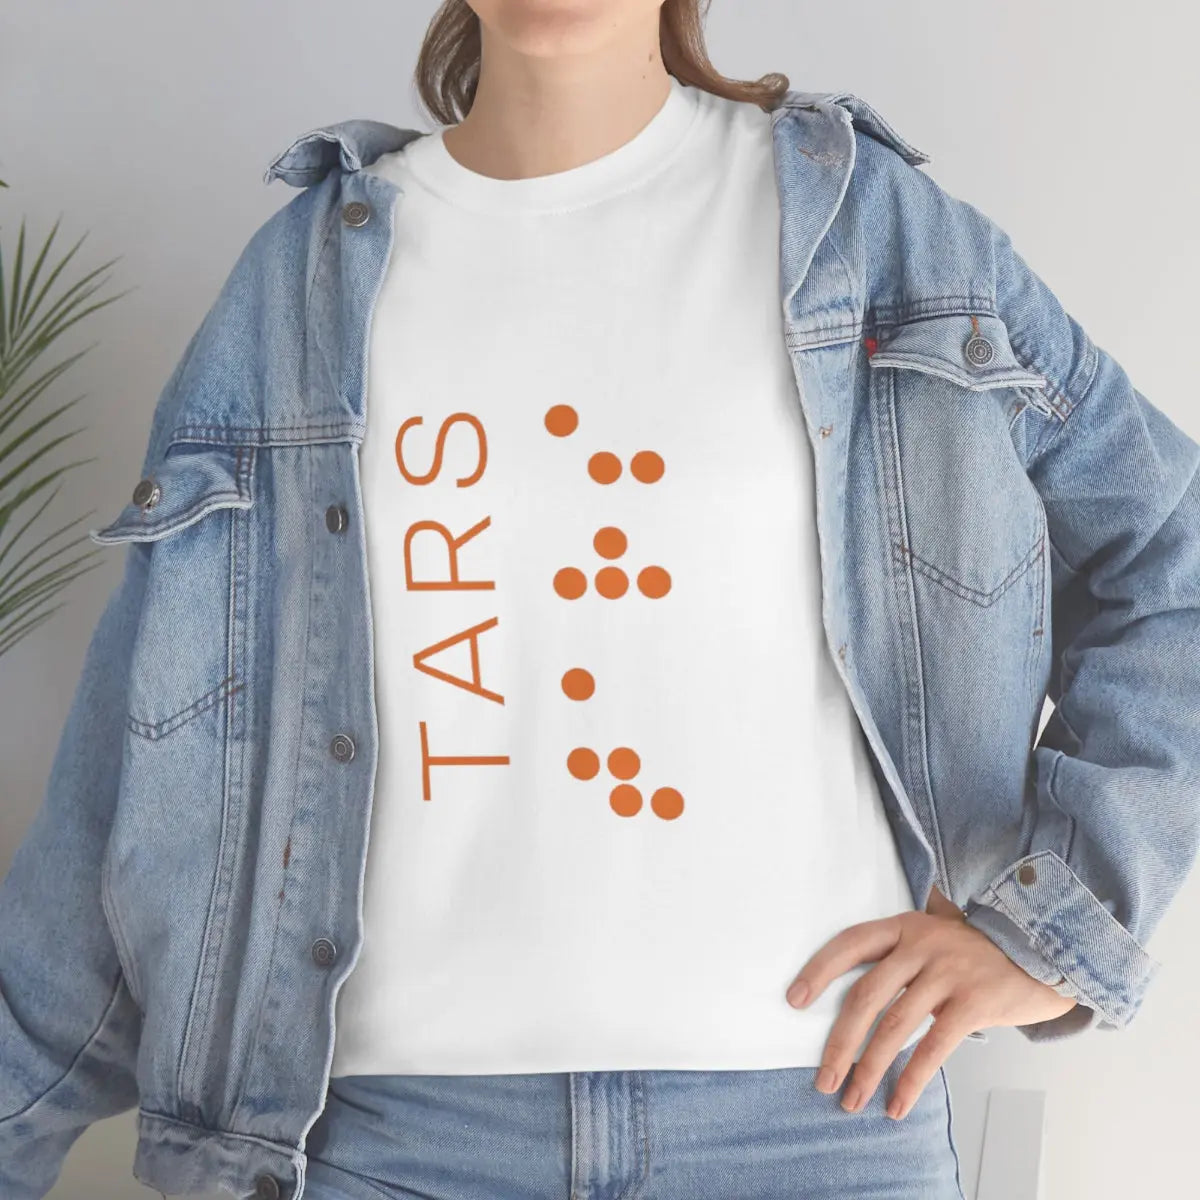 Interstellar - TARS Minimalist T-Shirt Printify